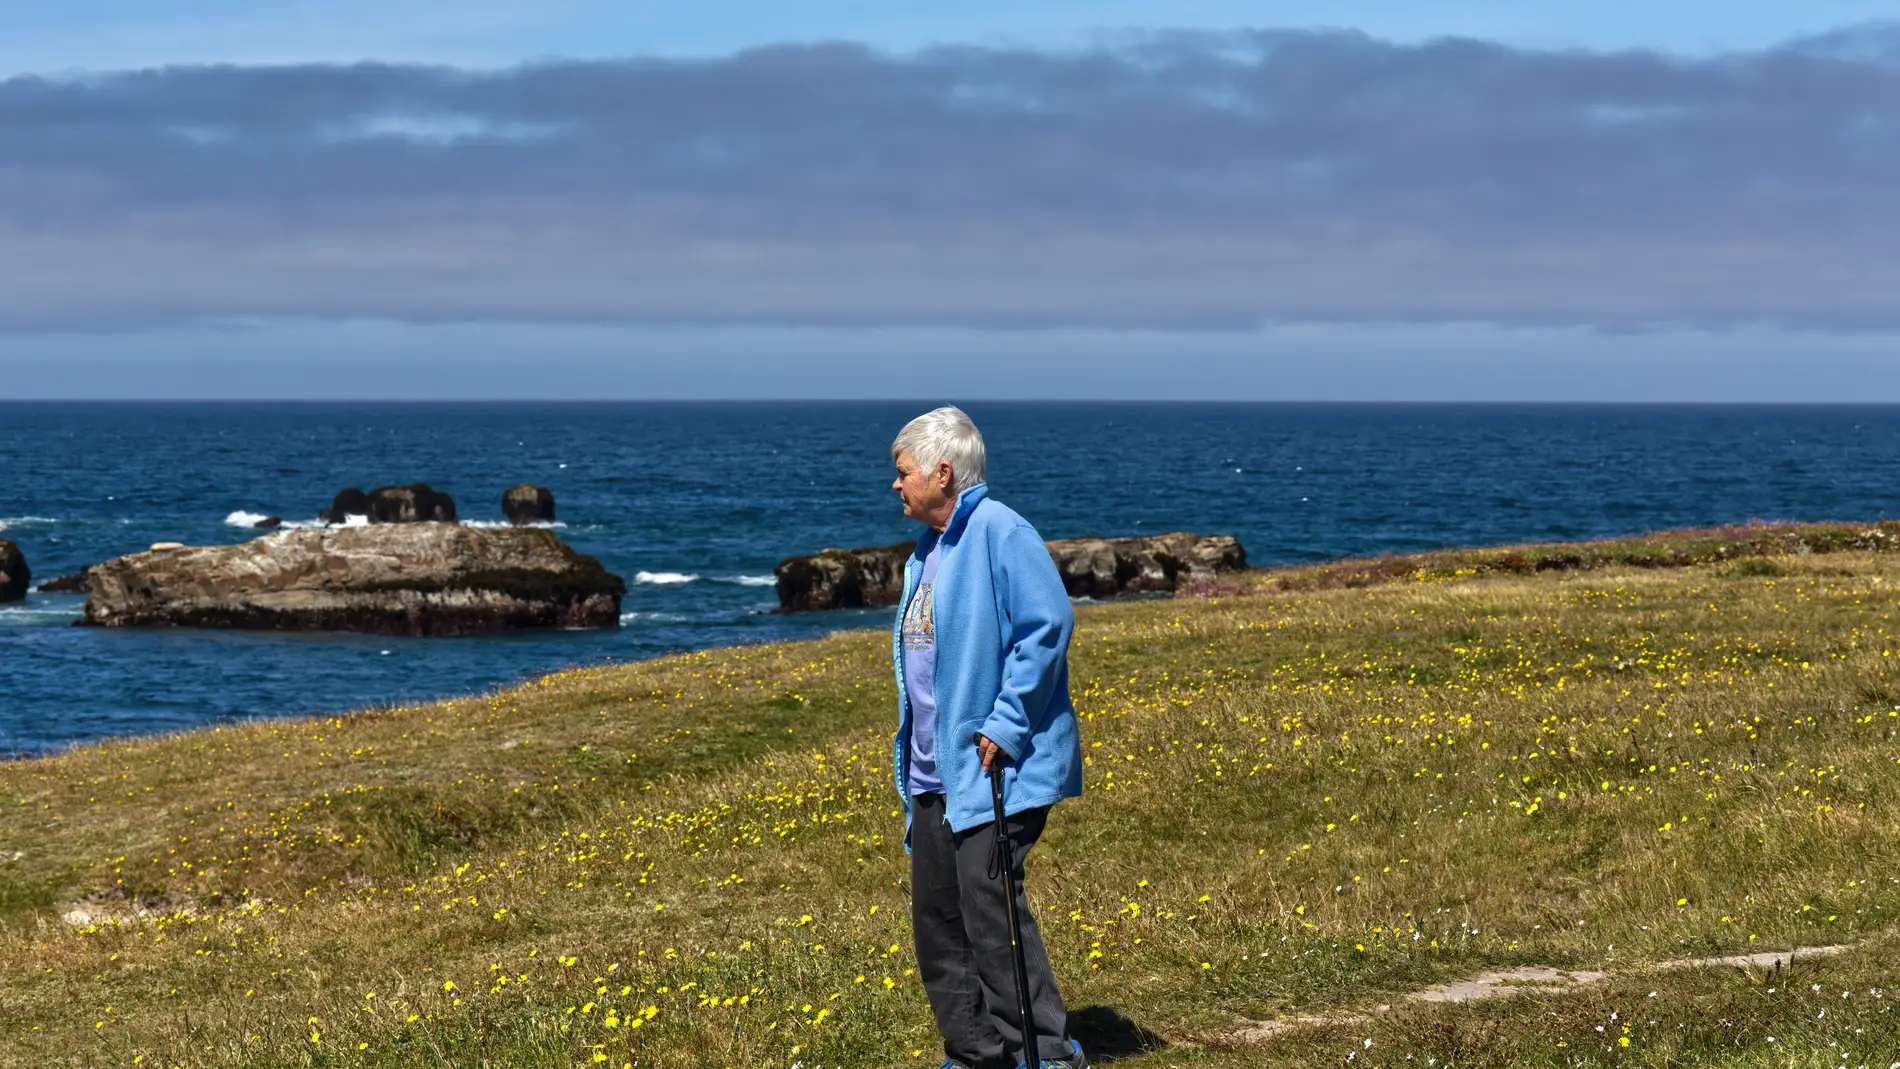 Imagen de archivo de una mujer mayor caminando sola junto al mar/ Unsplash